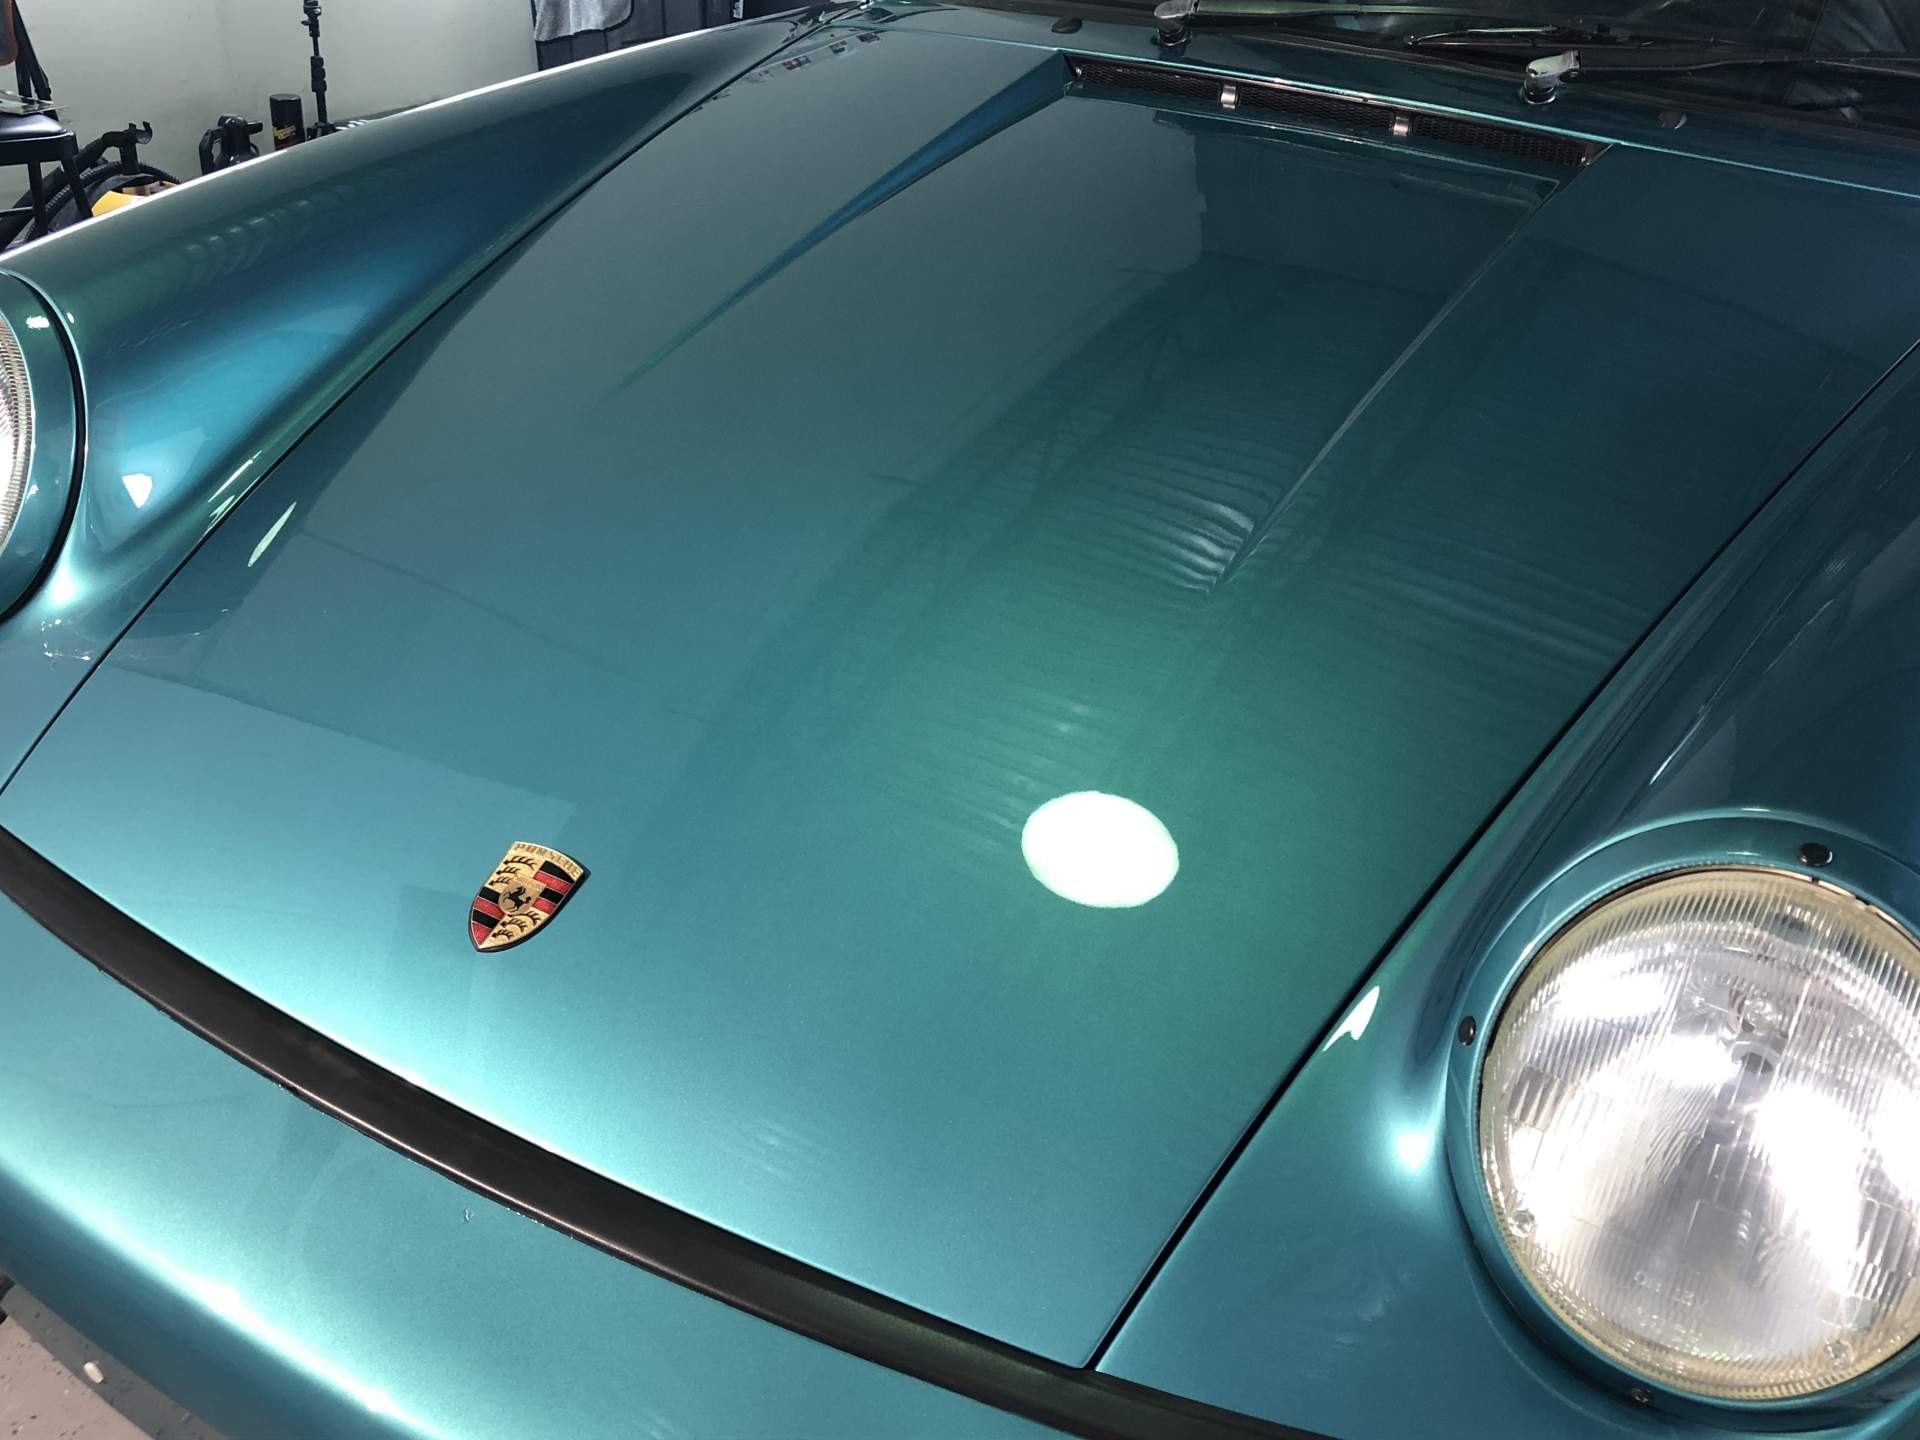 Porsche hood shined up